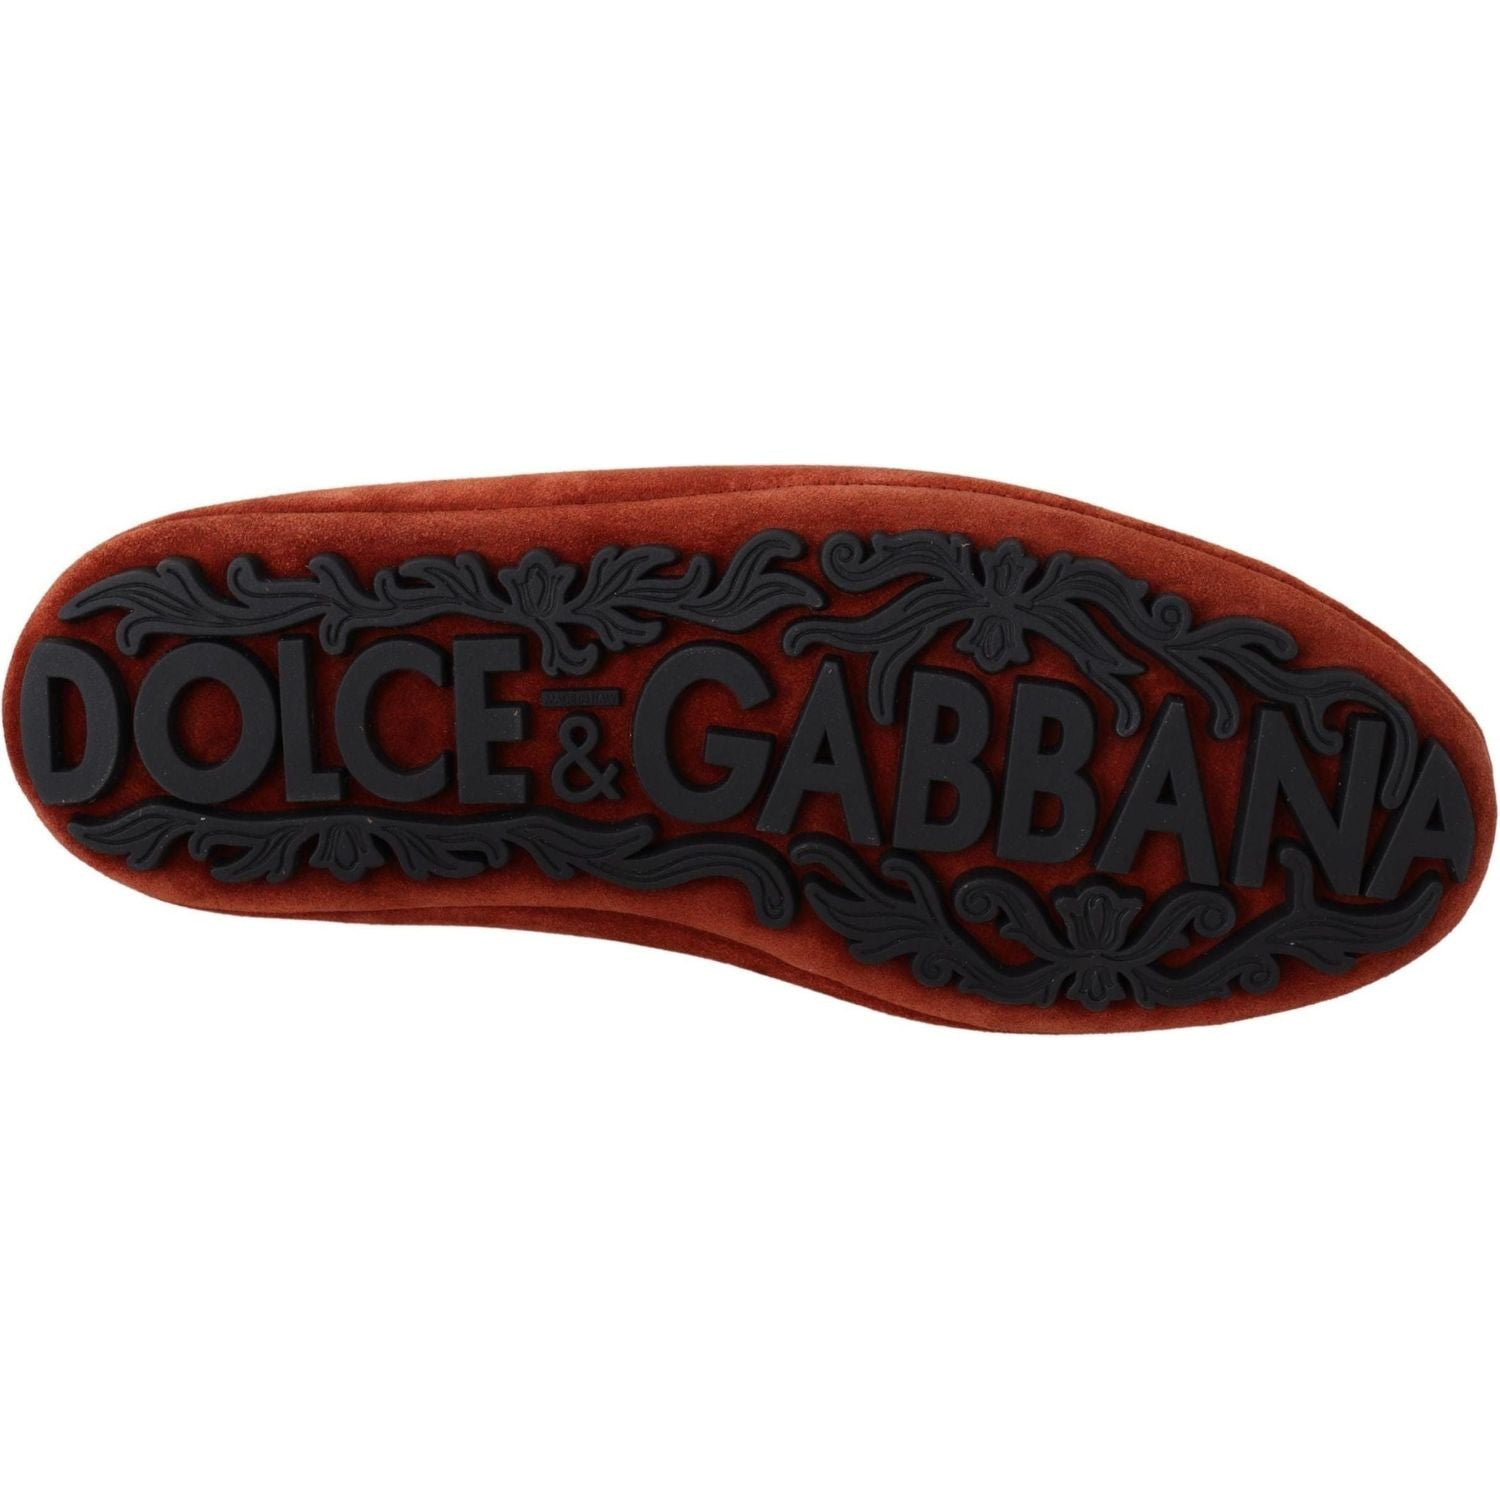 Dolce & Gabbana | Orange Leather Crystal Crown  Loafers Shoes | 699.00 - McRichard Designer Brands